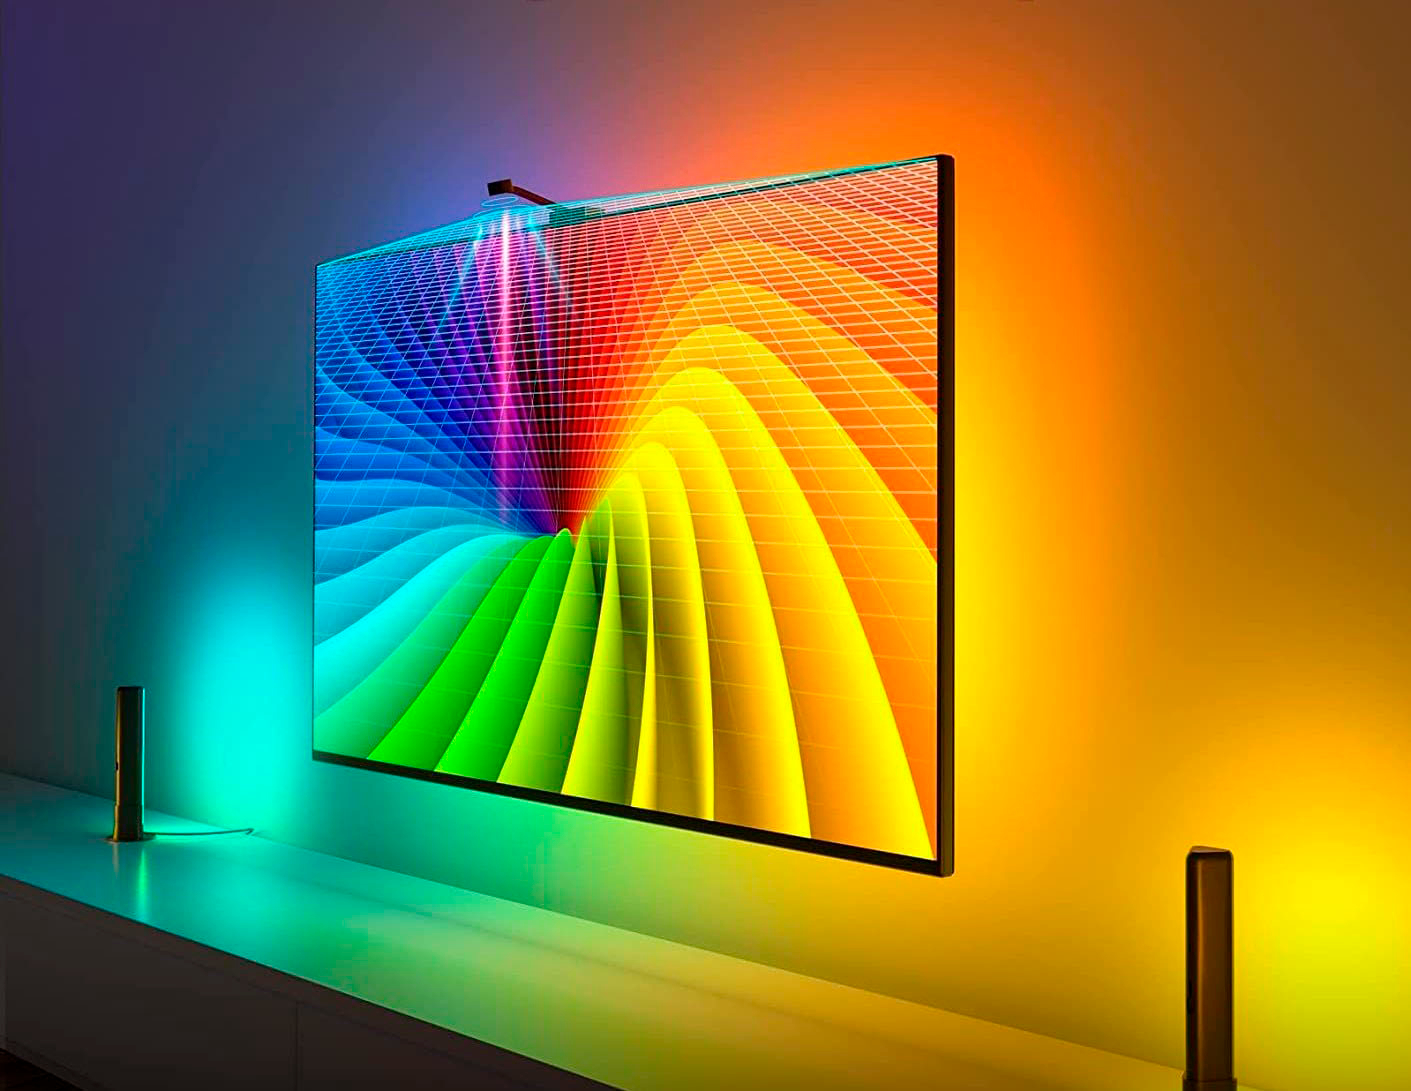 Govee DreamView TV Backlight Strip Lights (55-65-in TVs) - Color